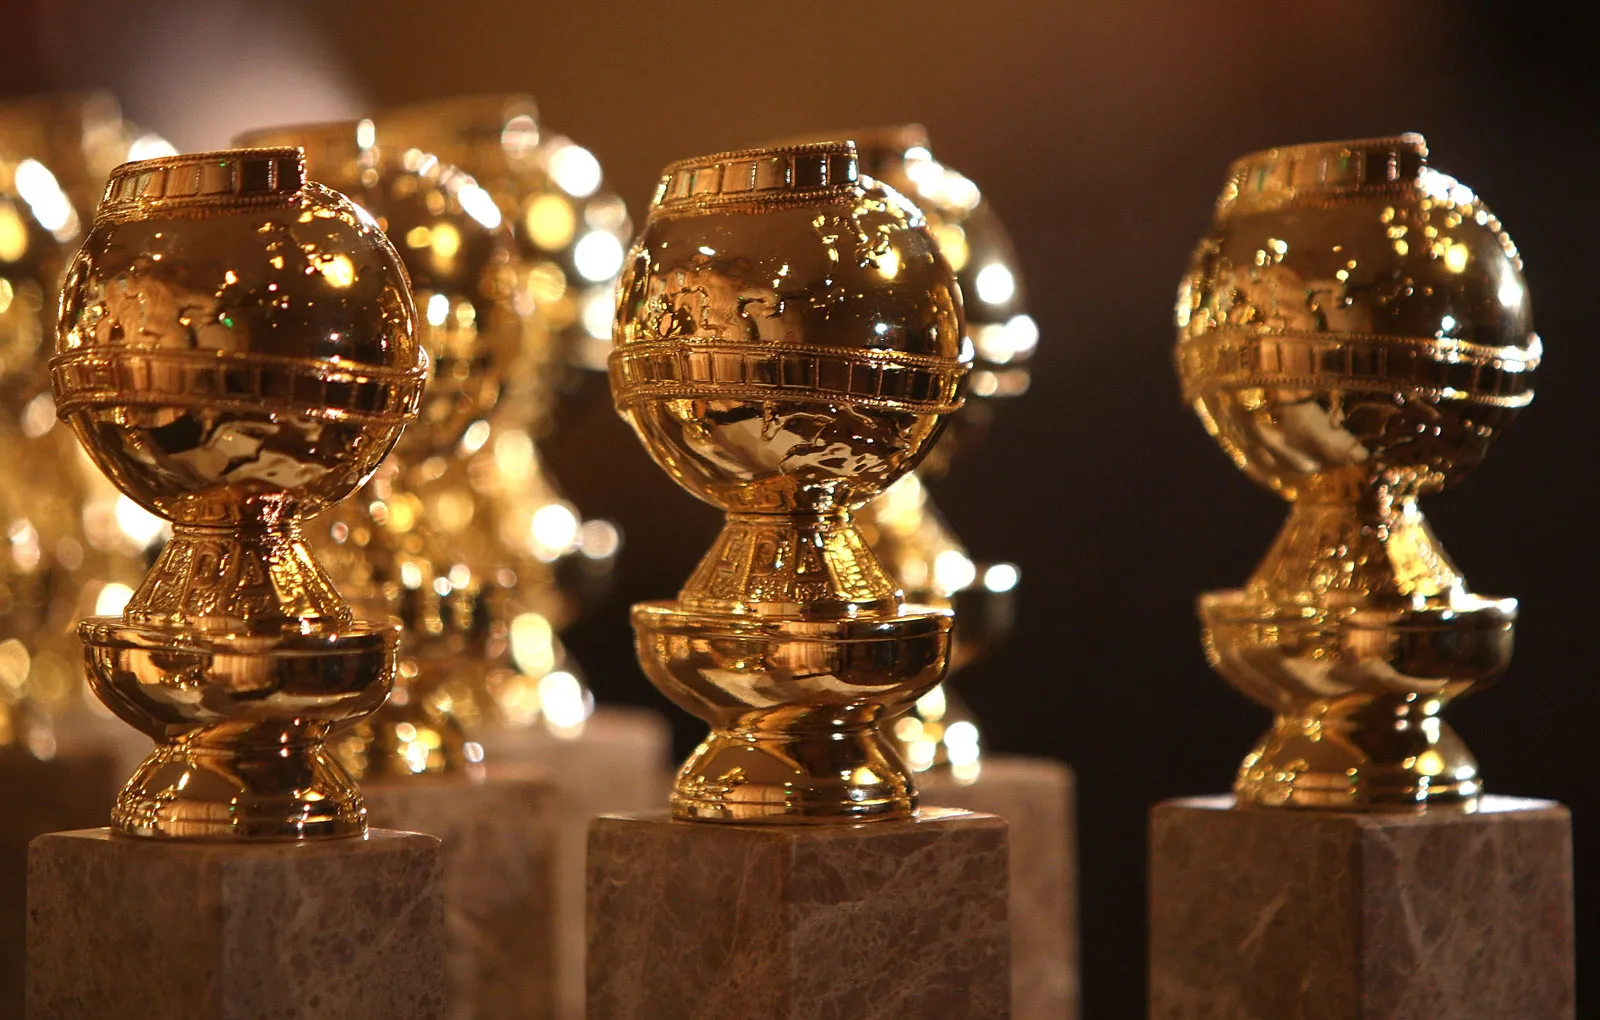  Golden-Globes-Preise 